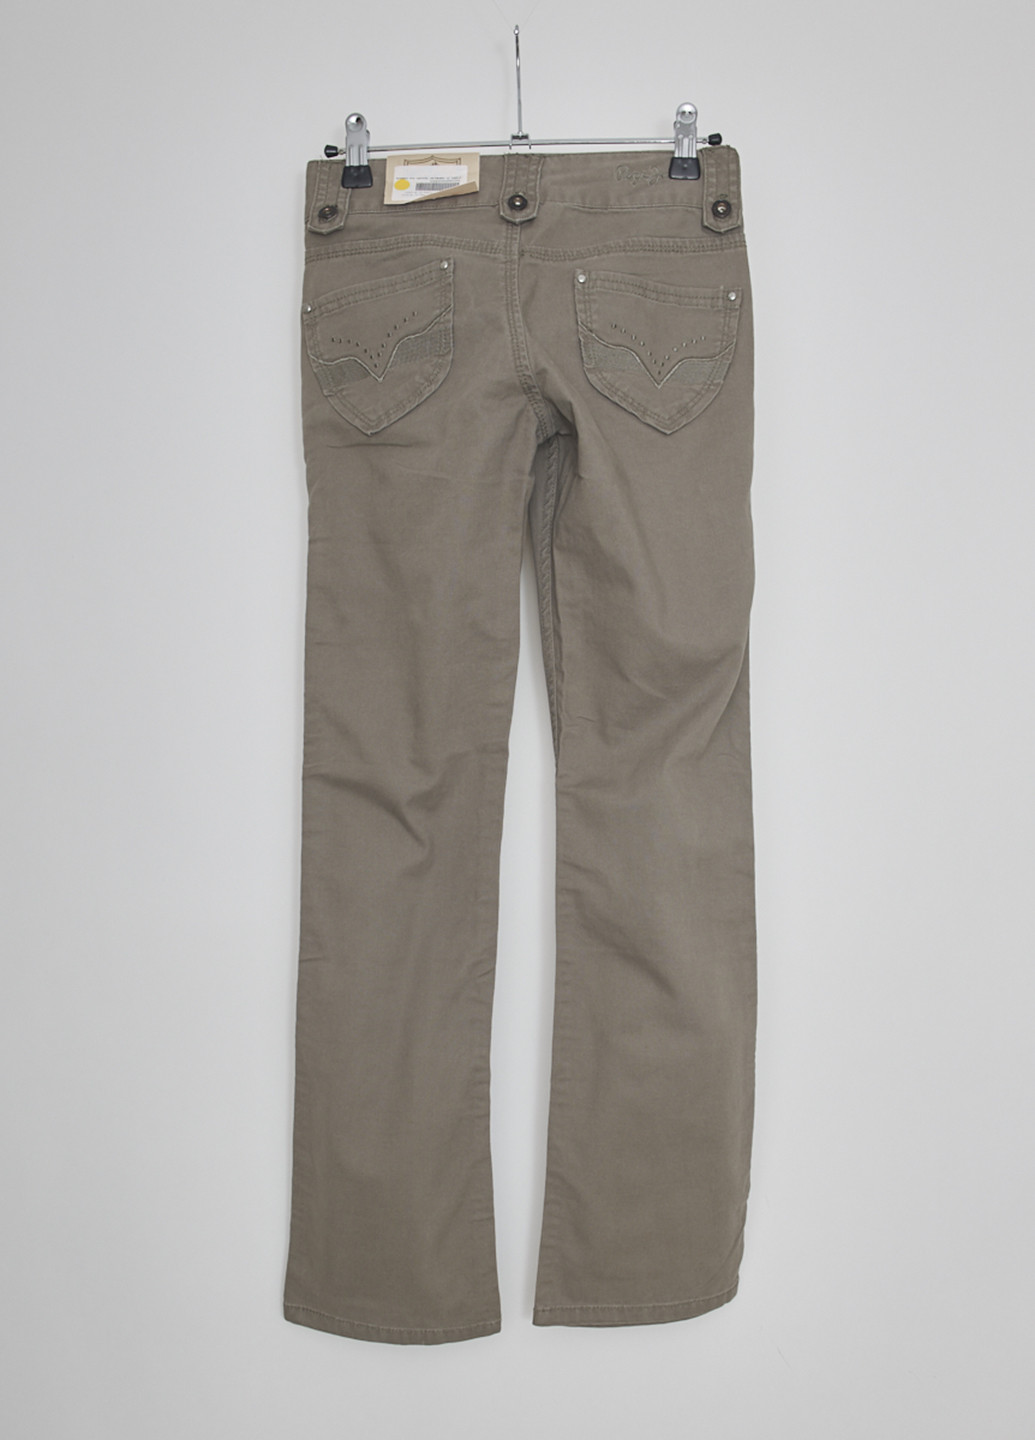 Темно-бежевые джинсовые демисезонные со средней талией брюки Pepe Jeans